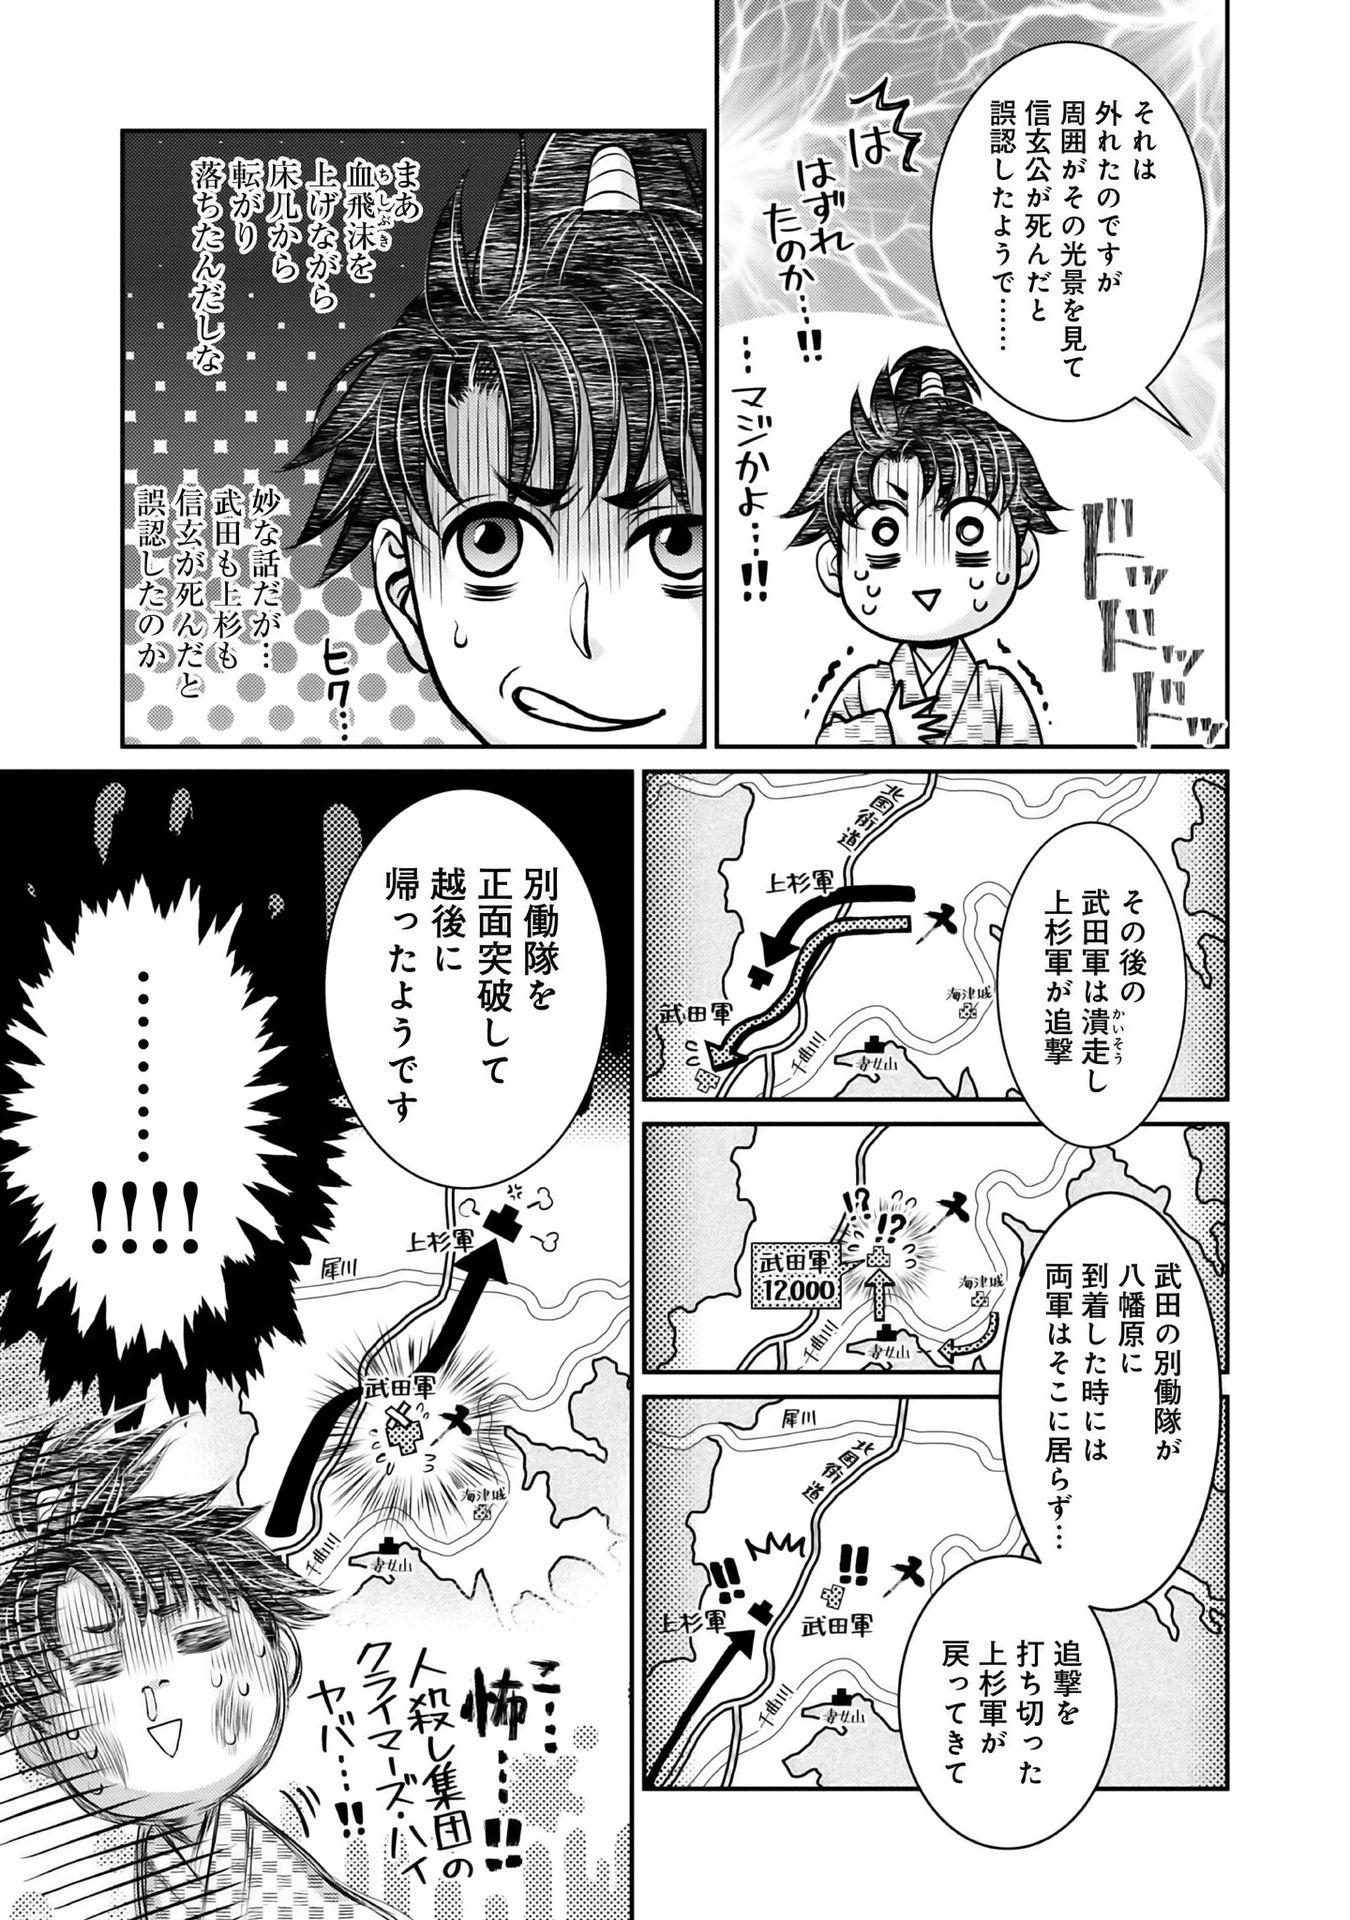 Afumi no Umi – Minamo ga Yureru Toki - Chapter 13 - Page 11